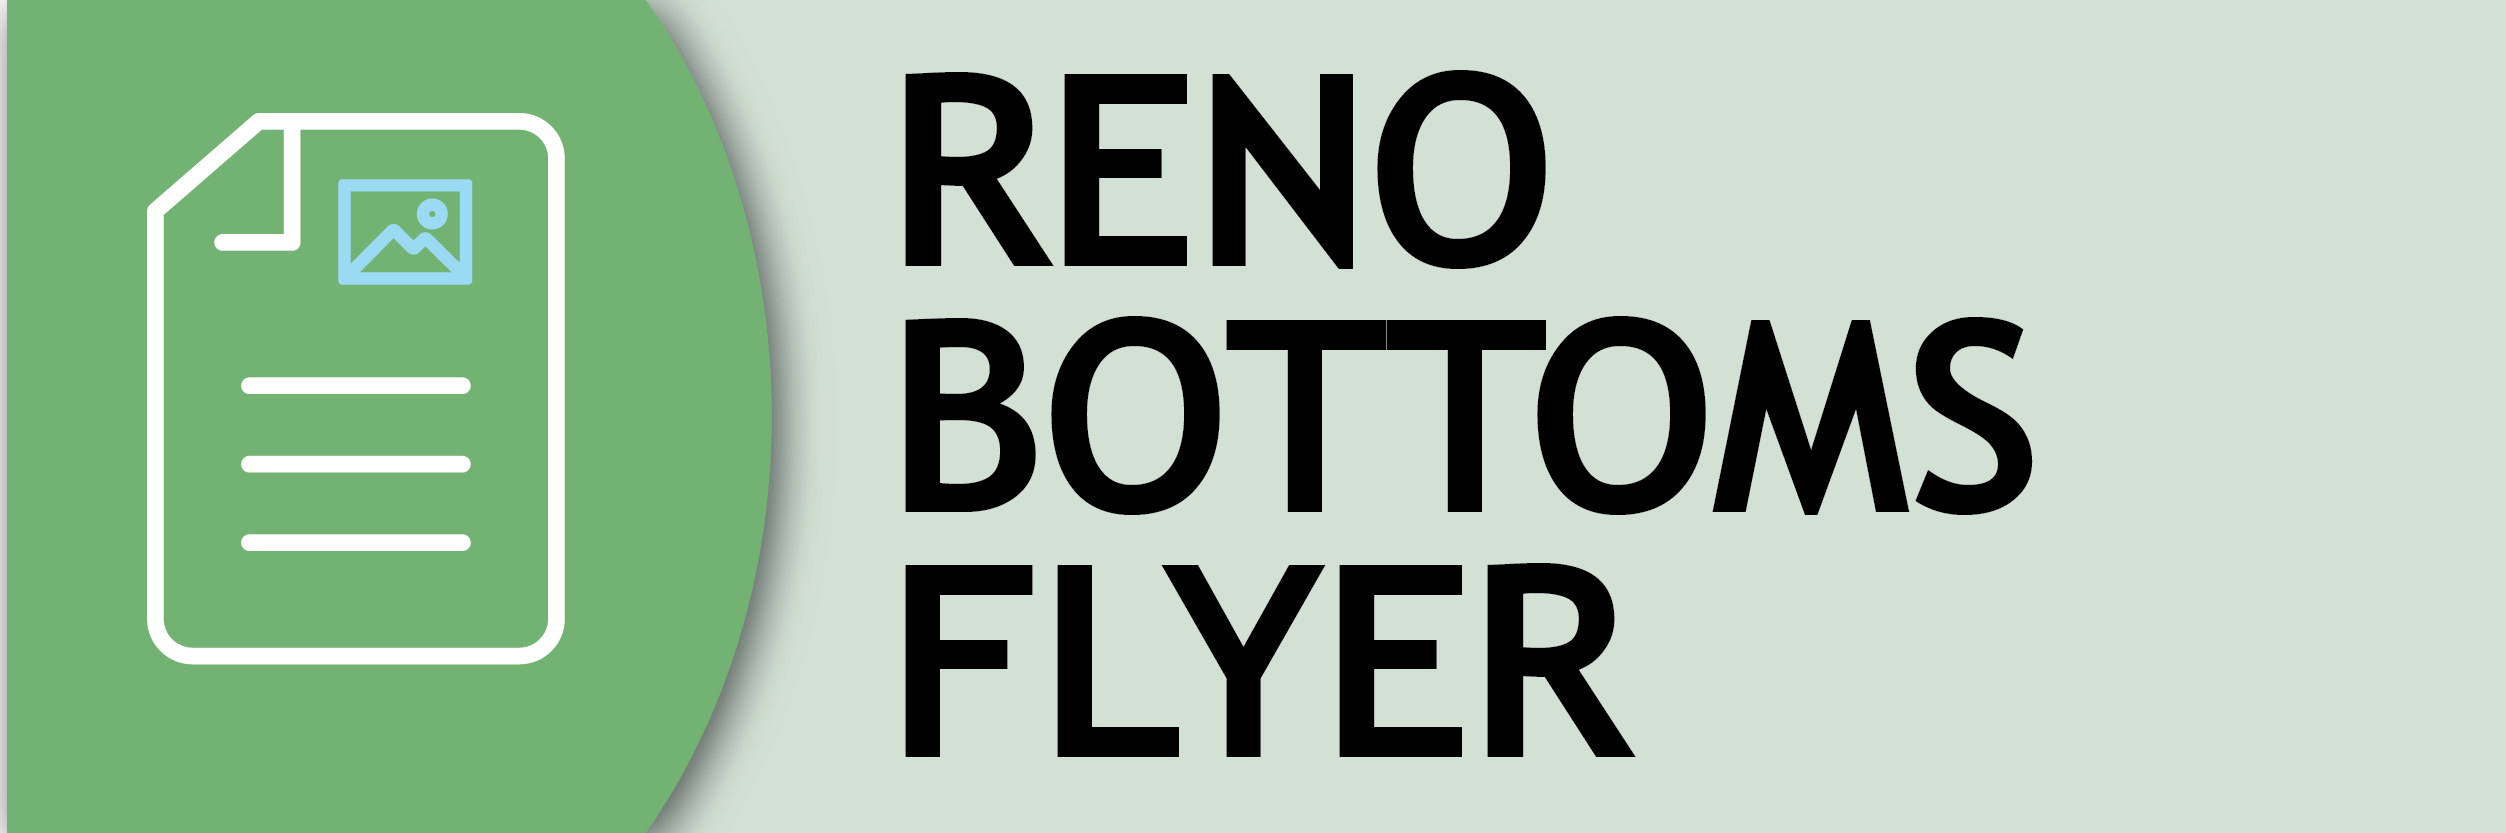 Reno Bottoms flyer button